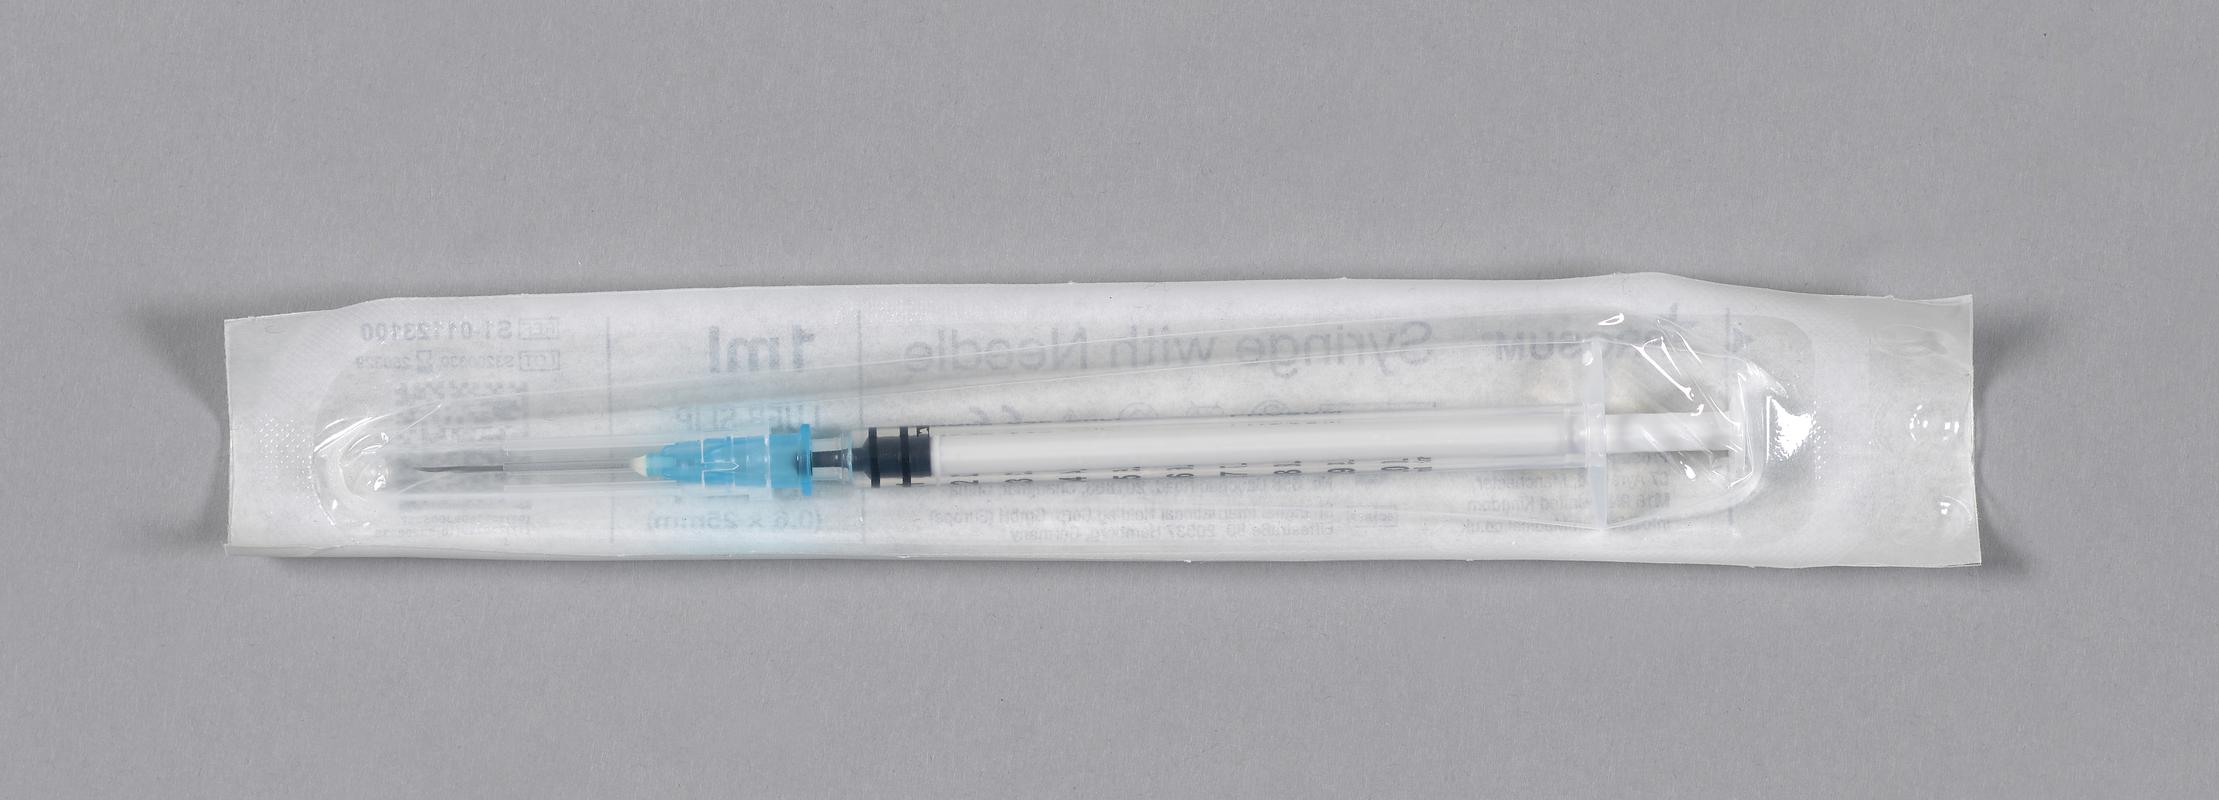 Unused syringe, in sterile packing.